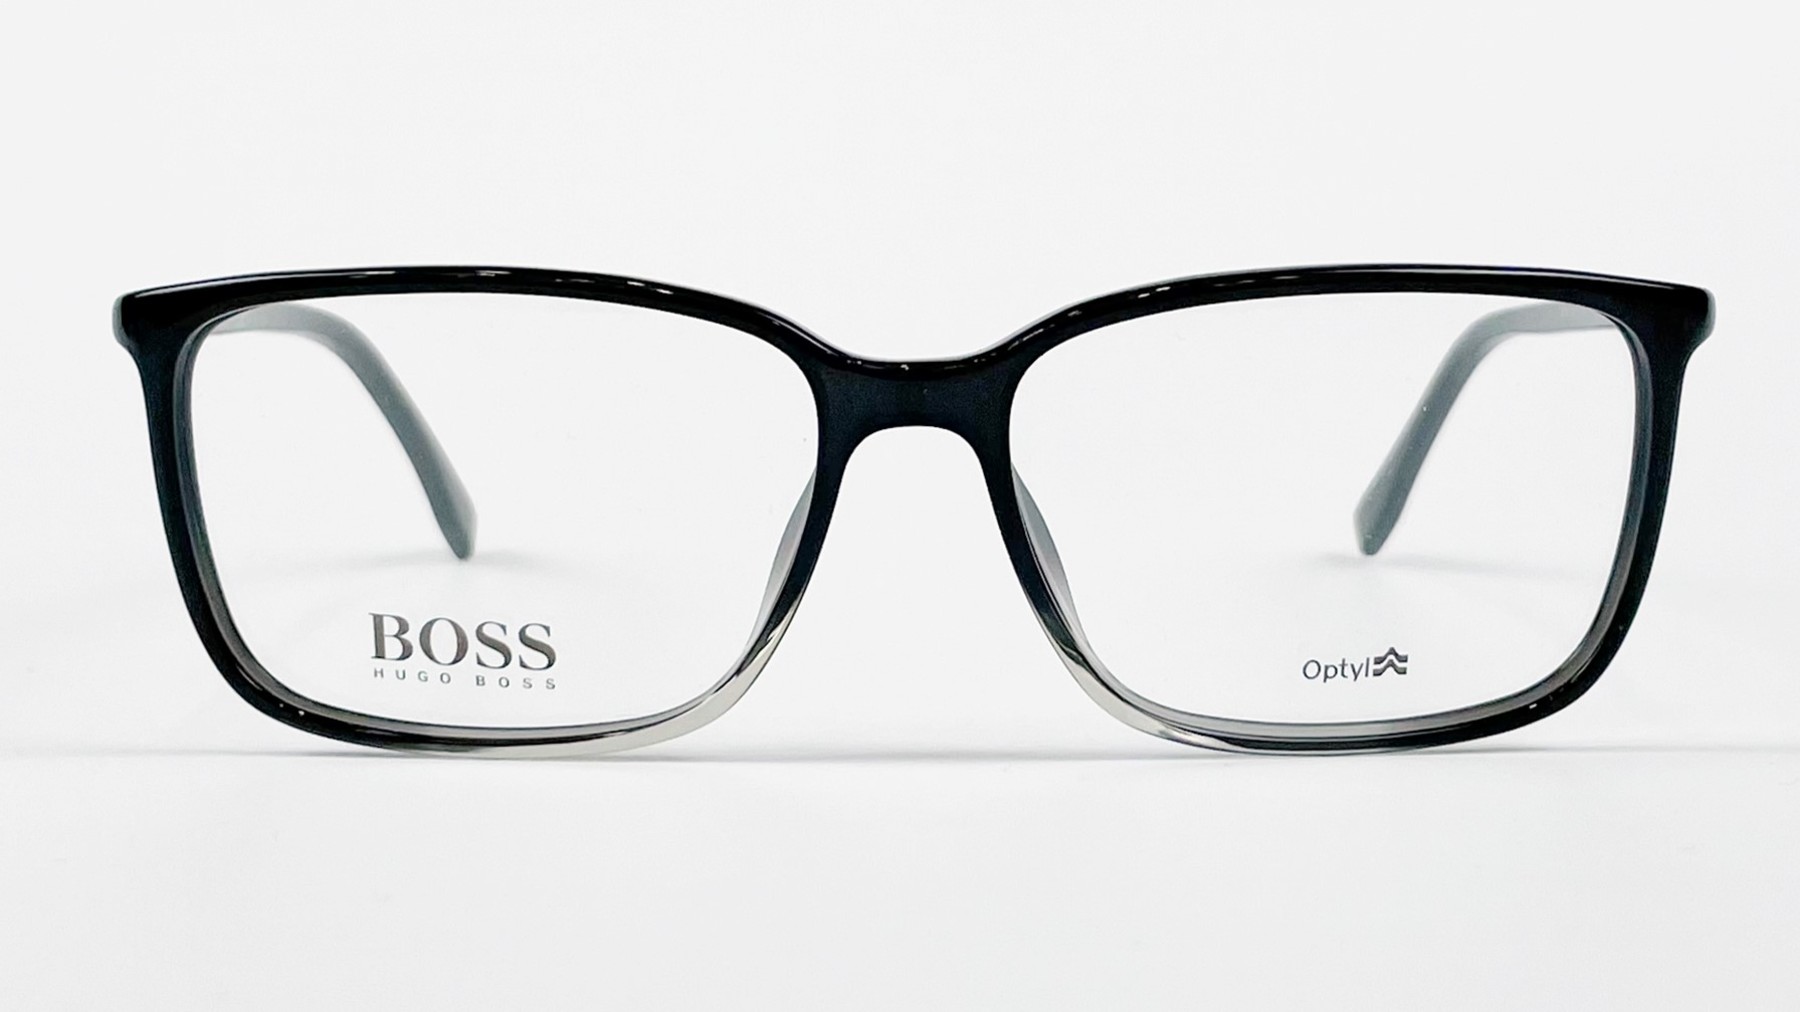 HUGO BOSS 0679 TW9, Korean glasses, sunglasses, eyeglasses, glasses